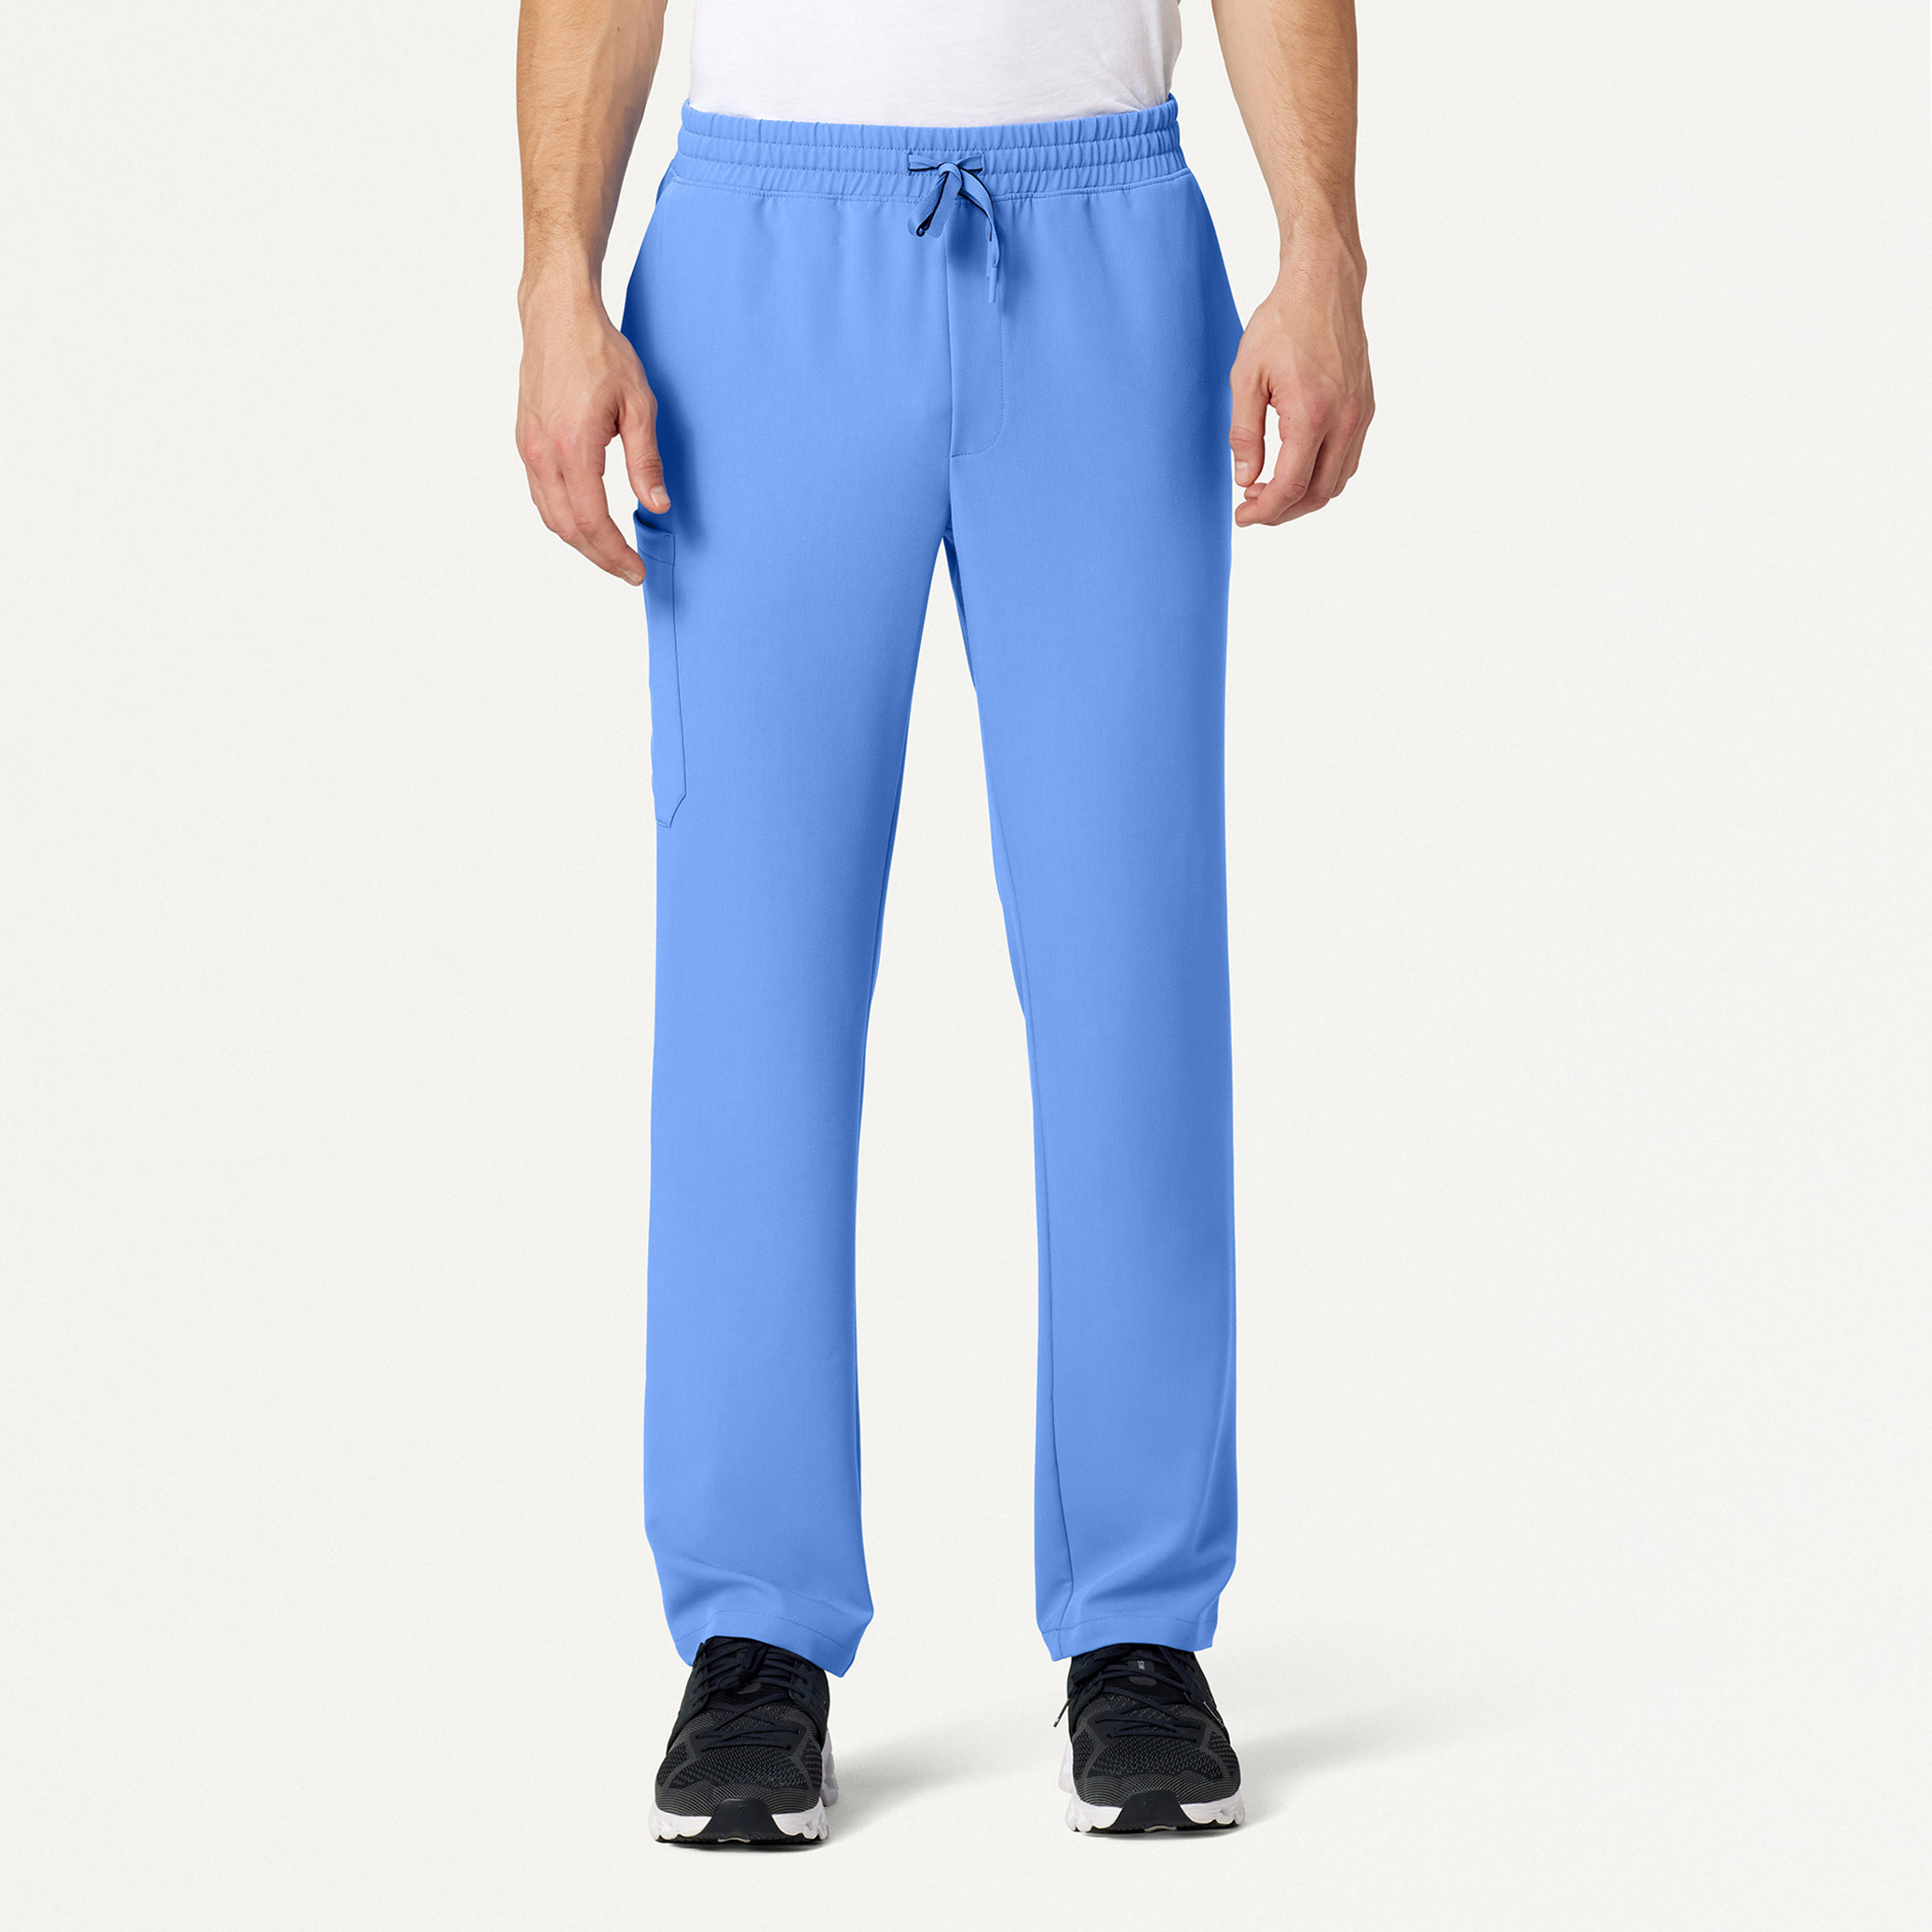 Rhodes Straight Scrub Pant in Ceil Blue - Men's Pants by Jaanuu